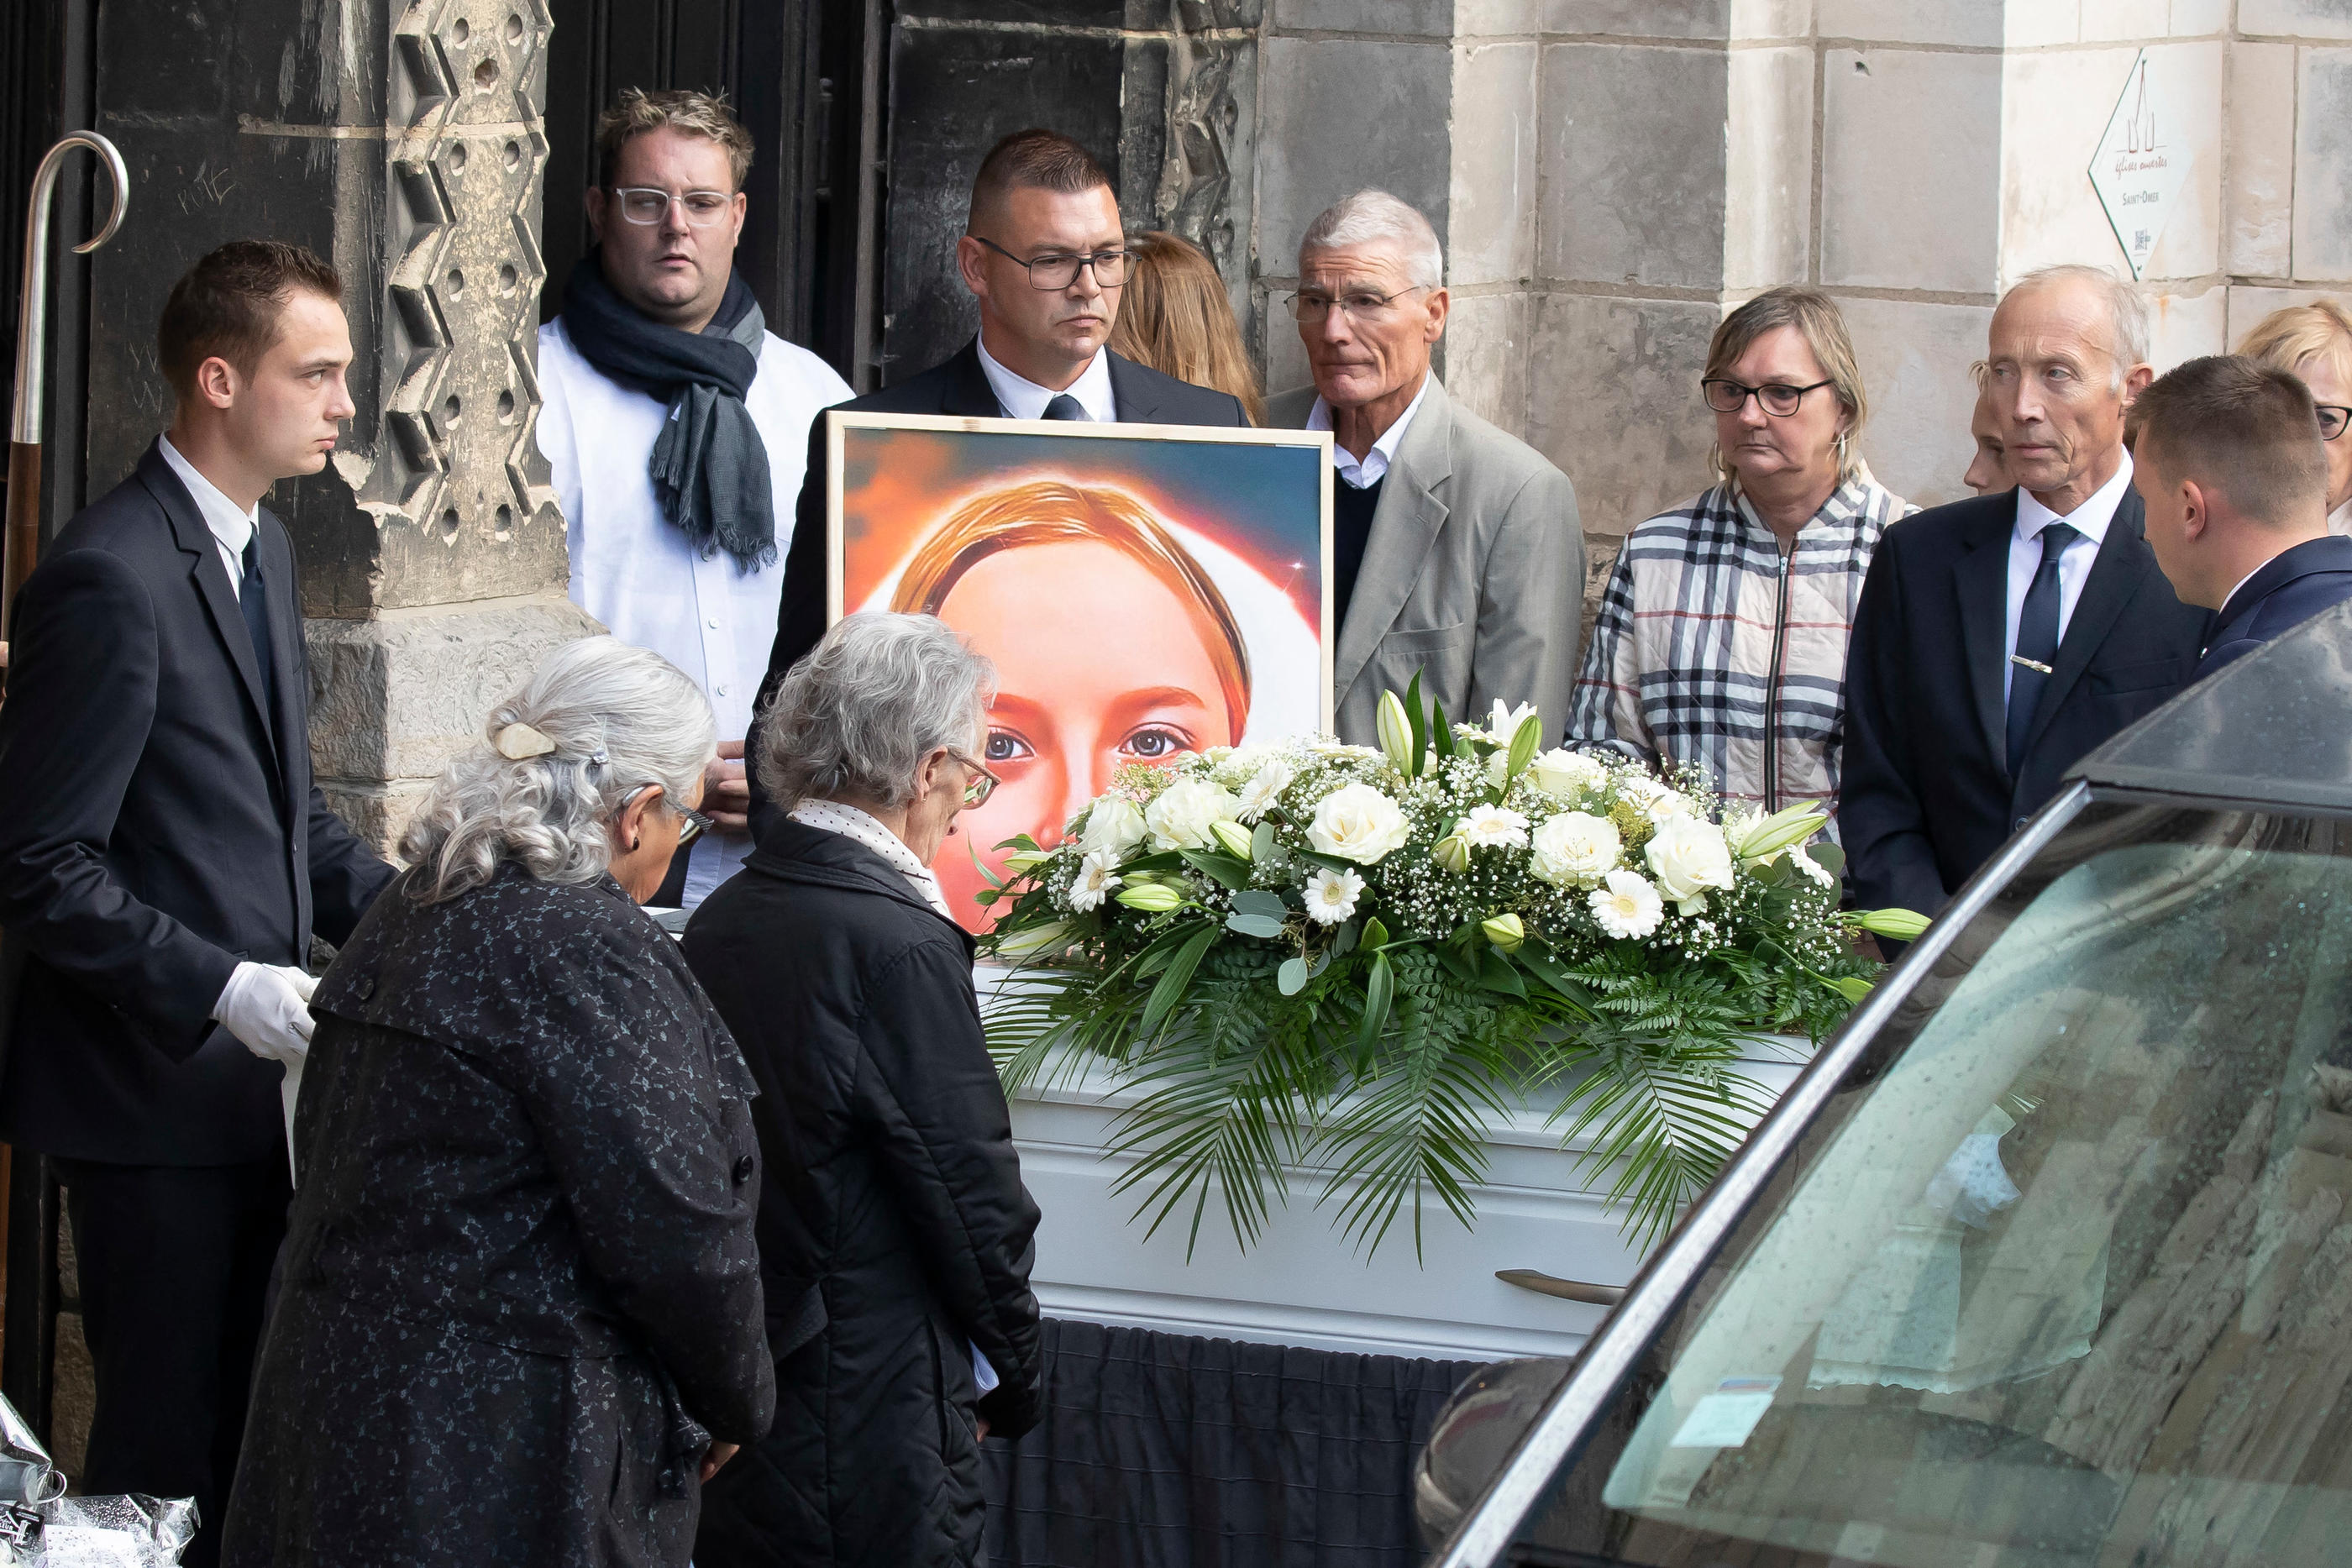 Le cercueil blanc de la petite Lola a été accueilli à la sortie de l’église par une foule d’anonymes. AbacaPress/Sebastien Courdji